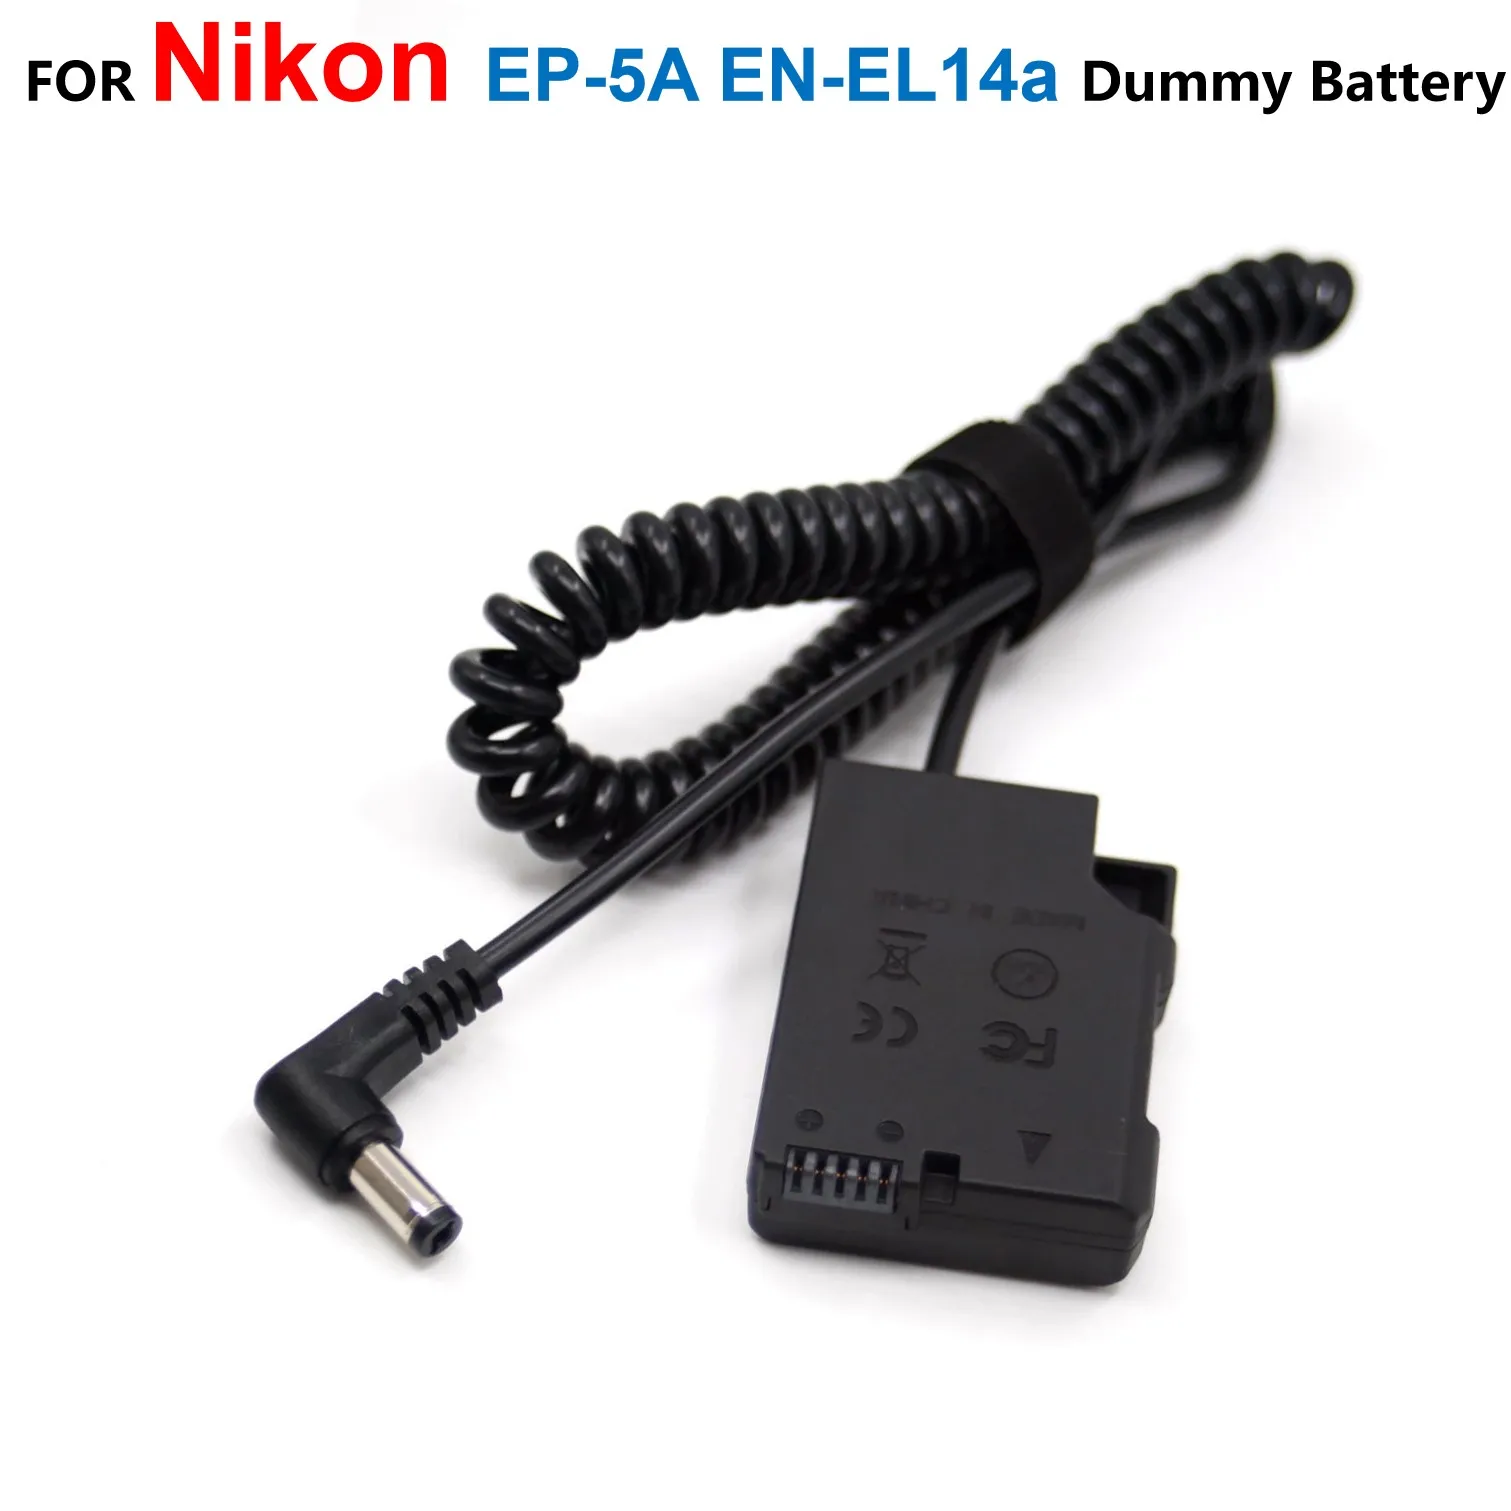 

EP-5A DC Coupler EN-EL14a Fake Battery Spring Cable For Nikon P7800 P7700 P7100 D5600 D5500 D5300 D5200 D5100 D3400 D3300 Camera